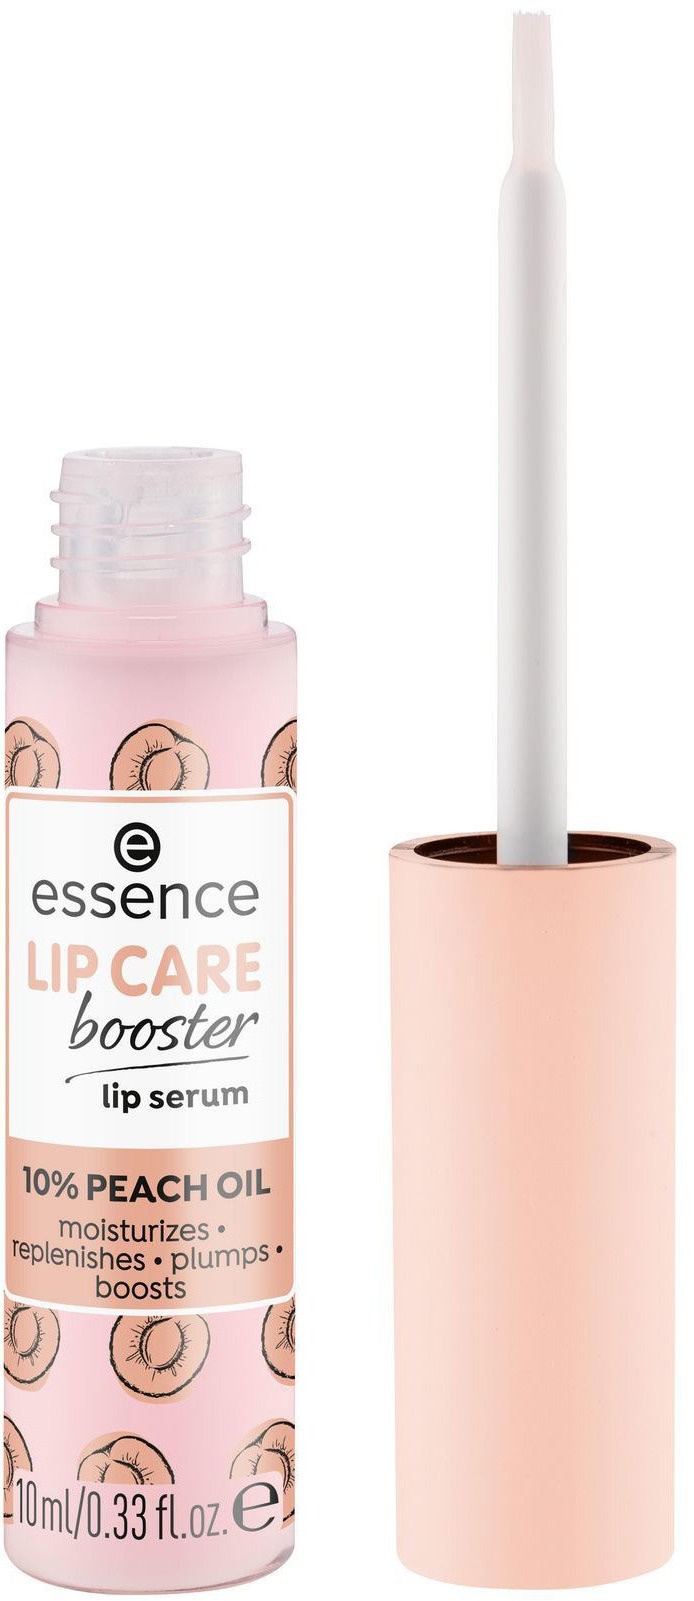 Essence Lip Care Booster Lip Serum 10% Peach Oil